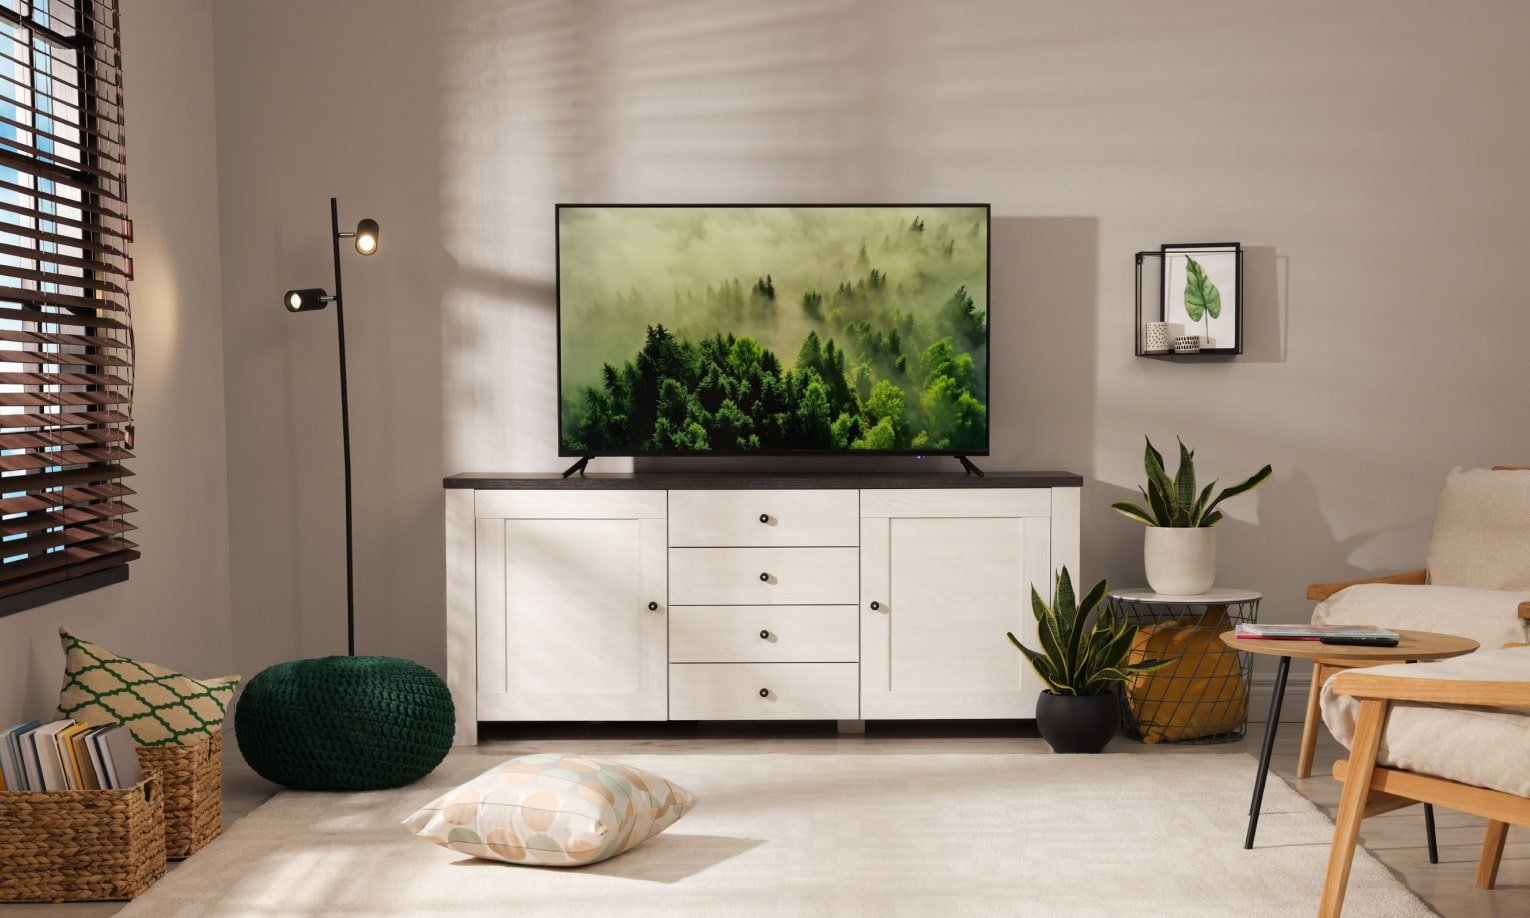 смарт-телевизор в светлой гостиной на комоде